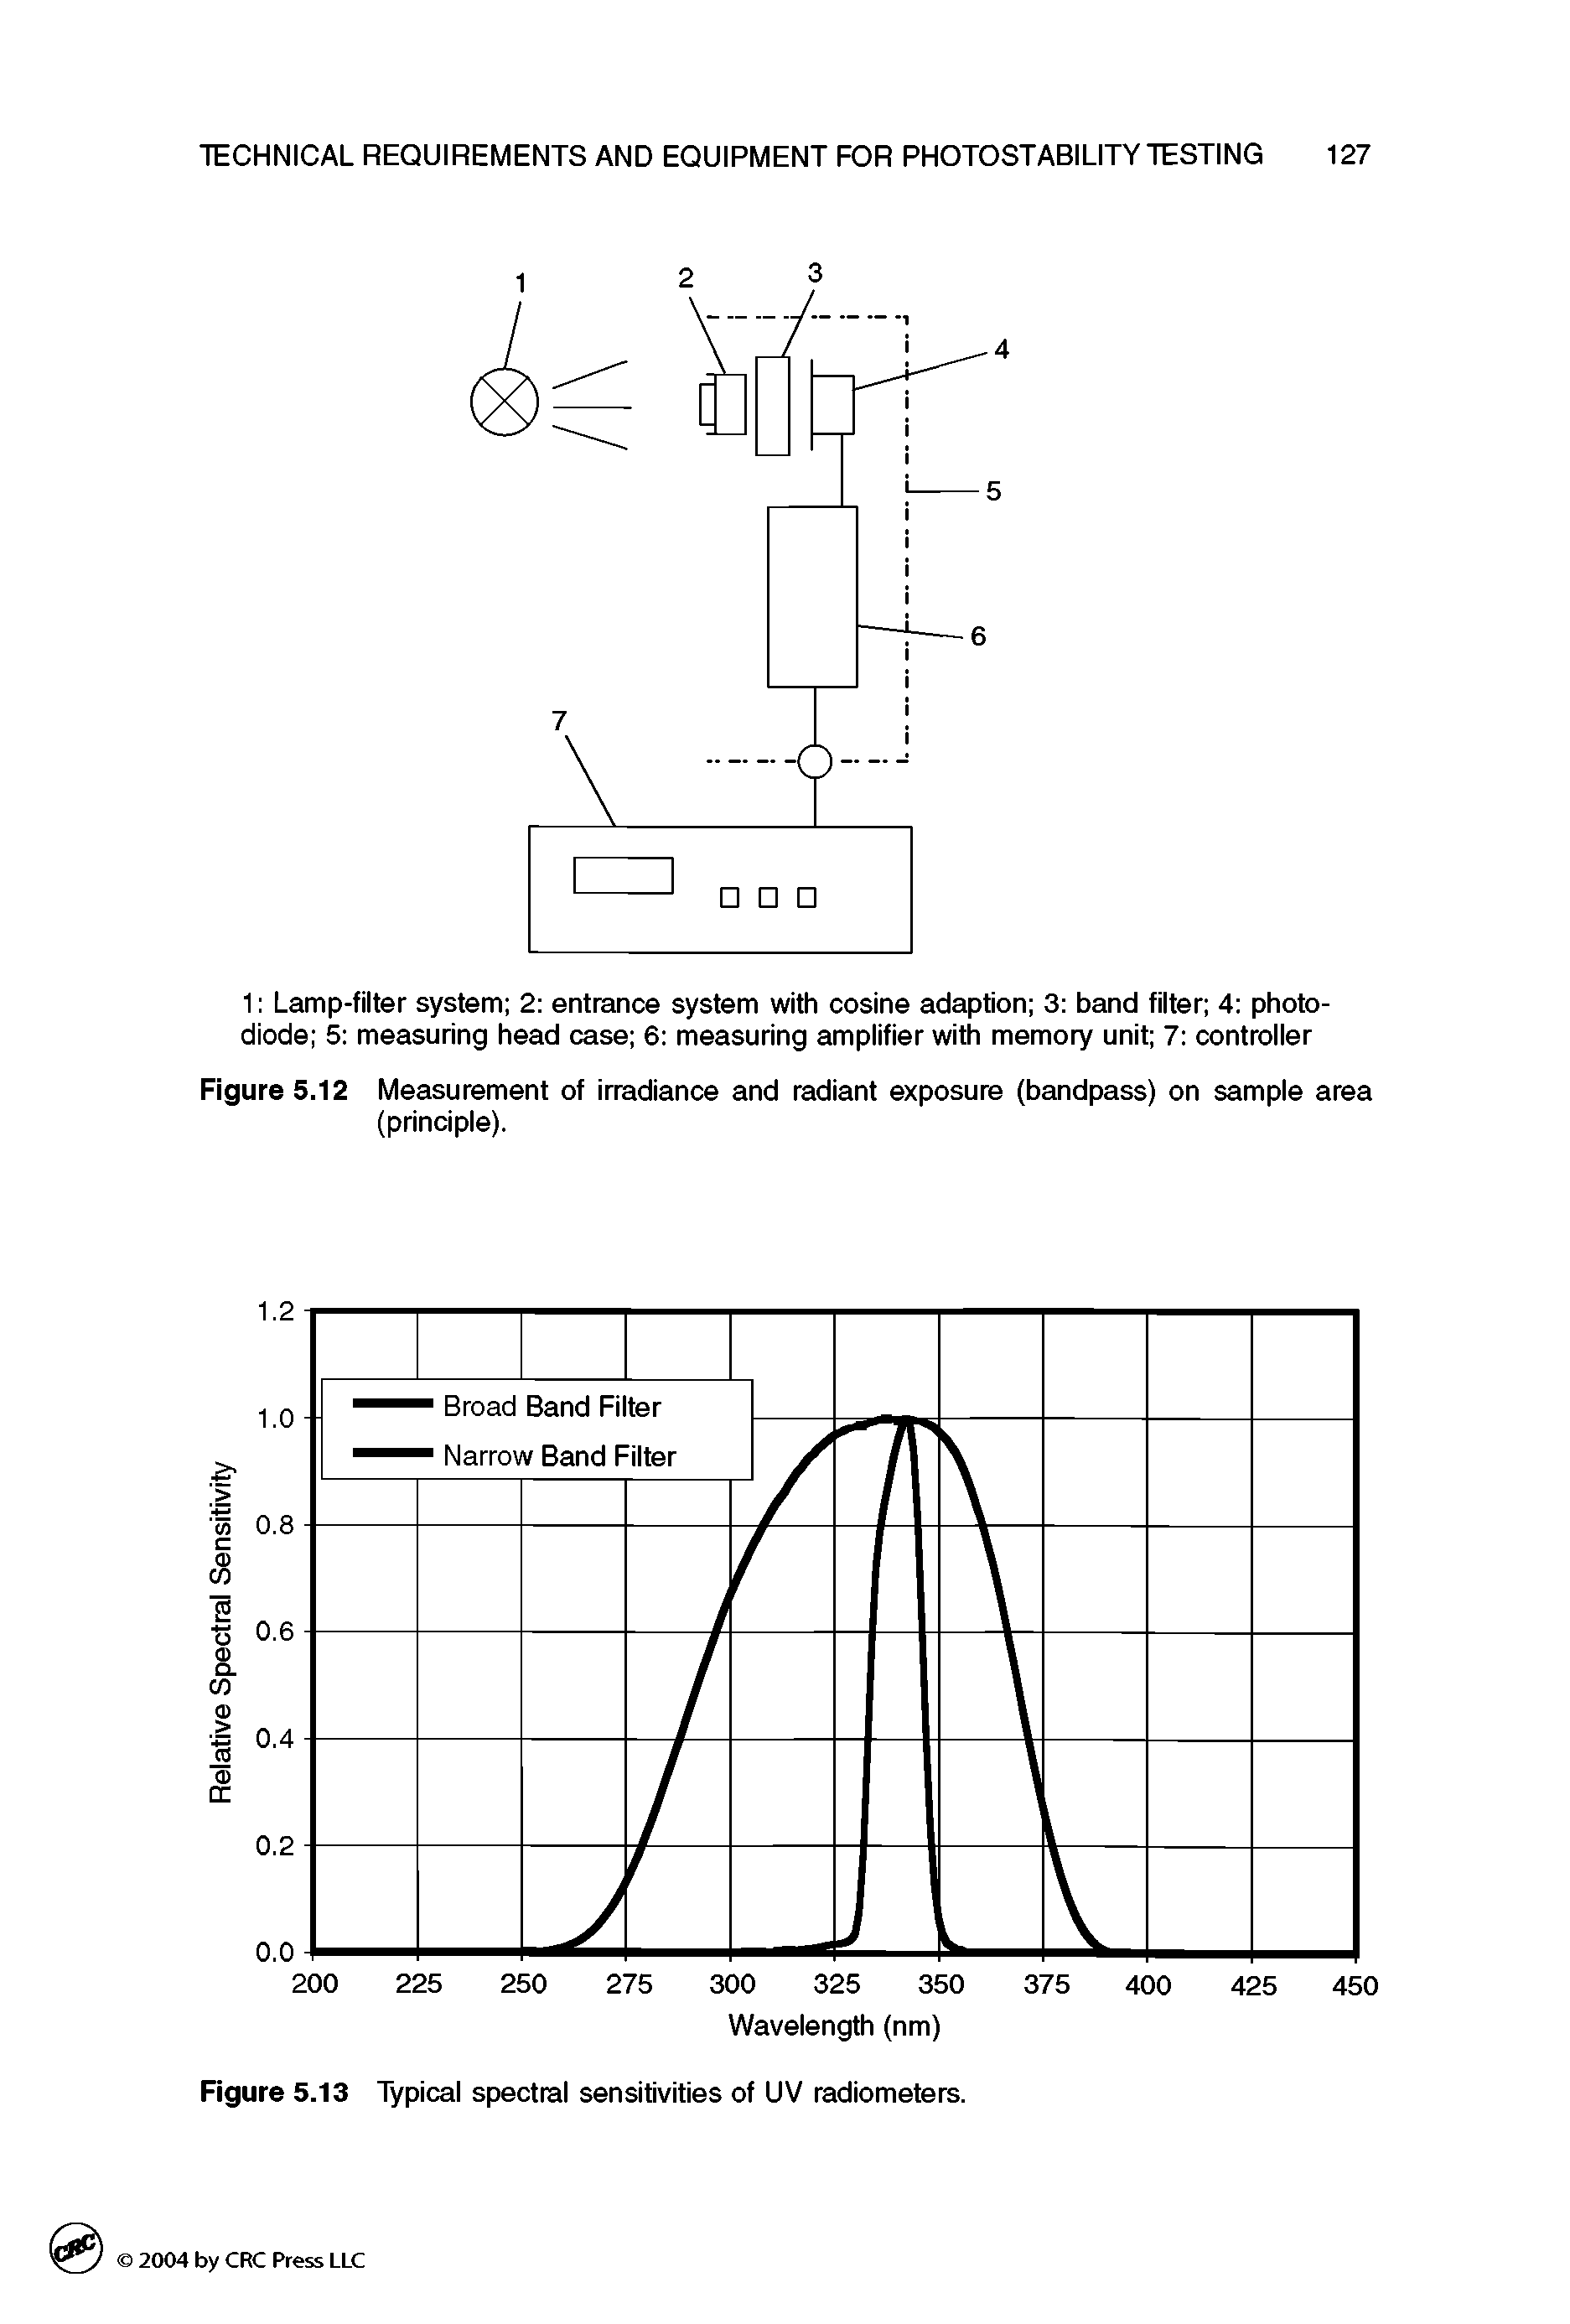 Figure 5.12 Measurement of irradiance and radiant exposure (bandpass) on sample area (principle).